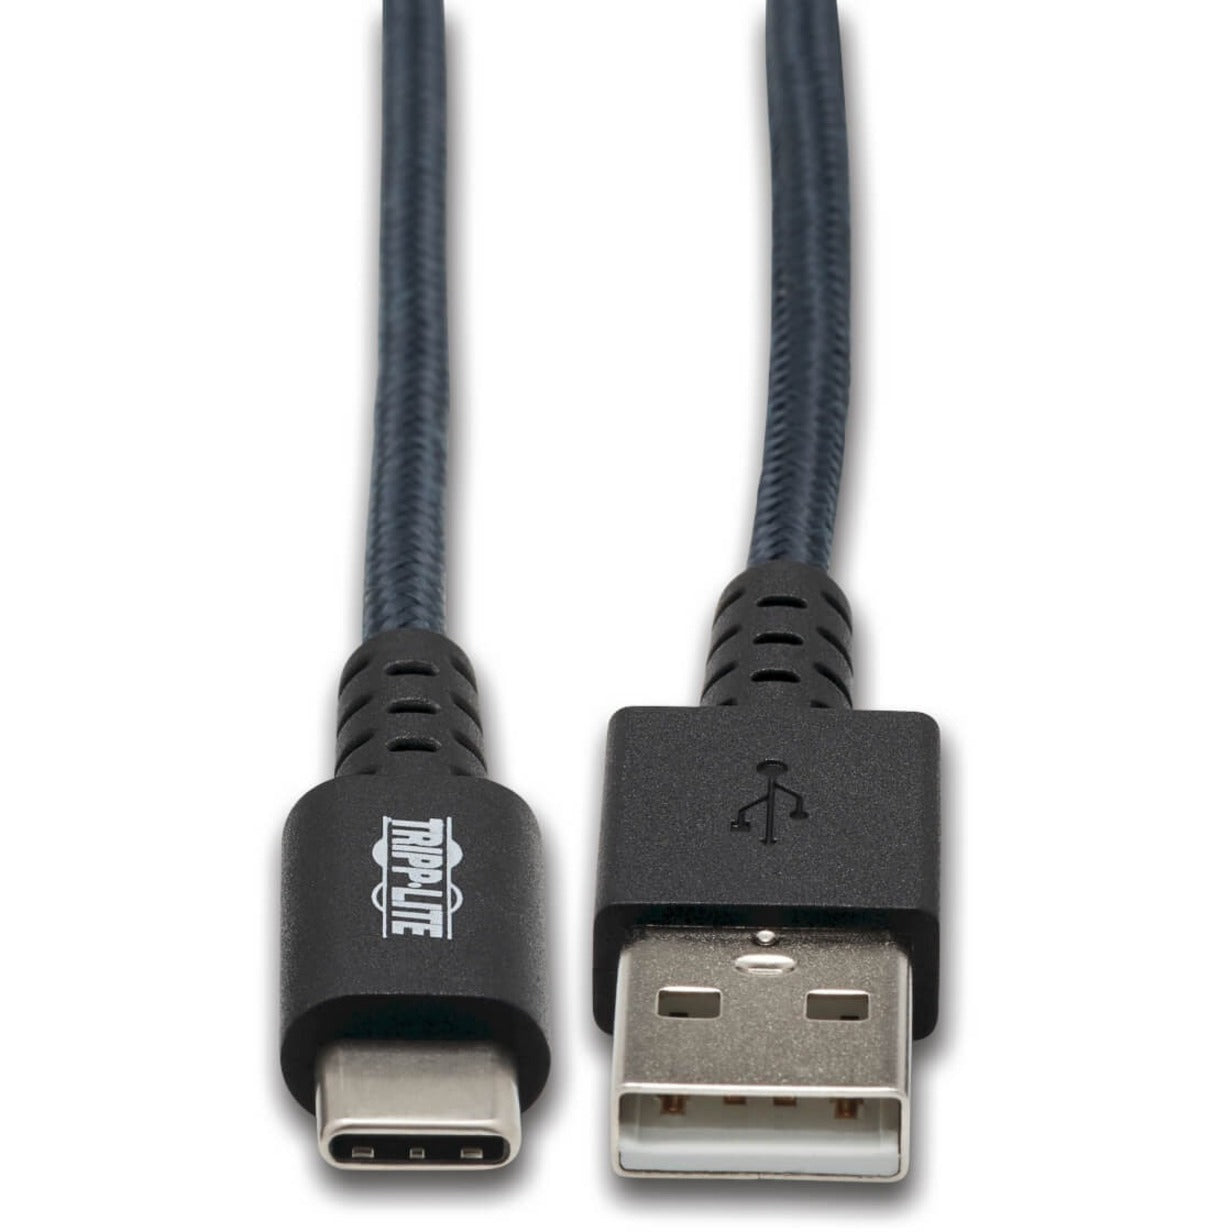 Tripp Lite U038-003-GY-MAX 重型 USB-A 至 USB-C 电缆，灰色，3 英尺 (0.9 米)，抗压，拉力缓解，充电，耐磨，可逆，耐裂纹，柔软 Tripp Lite 店铺名称翻译：特力皮